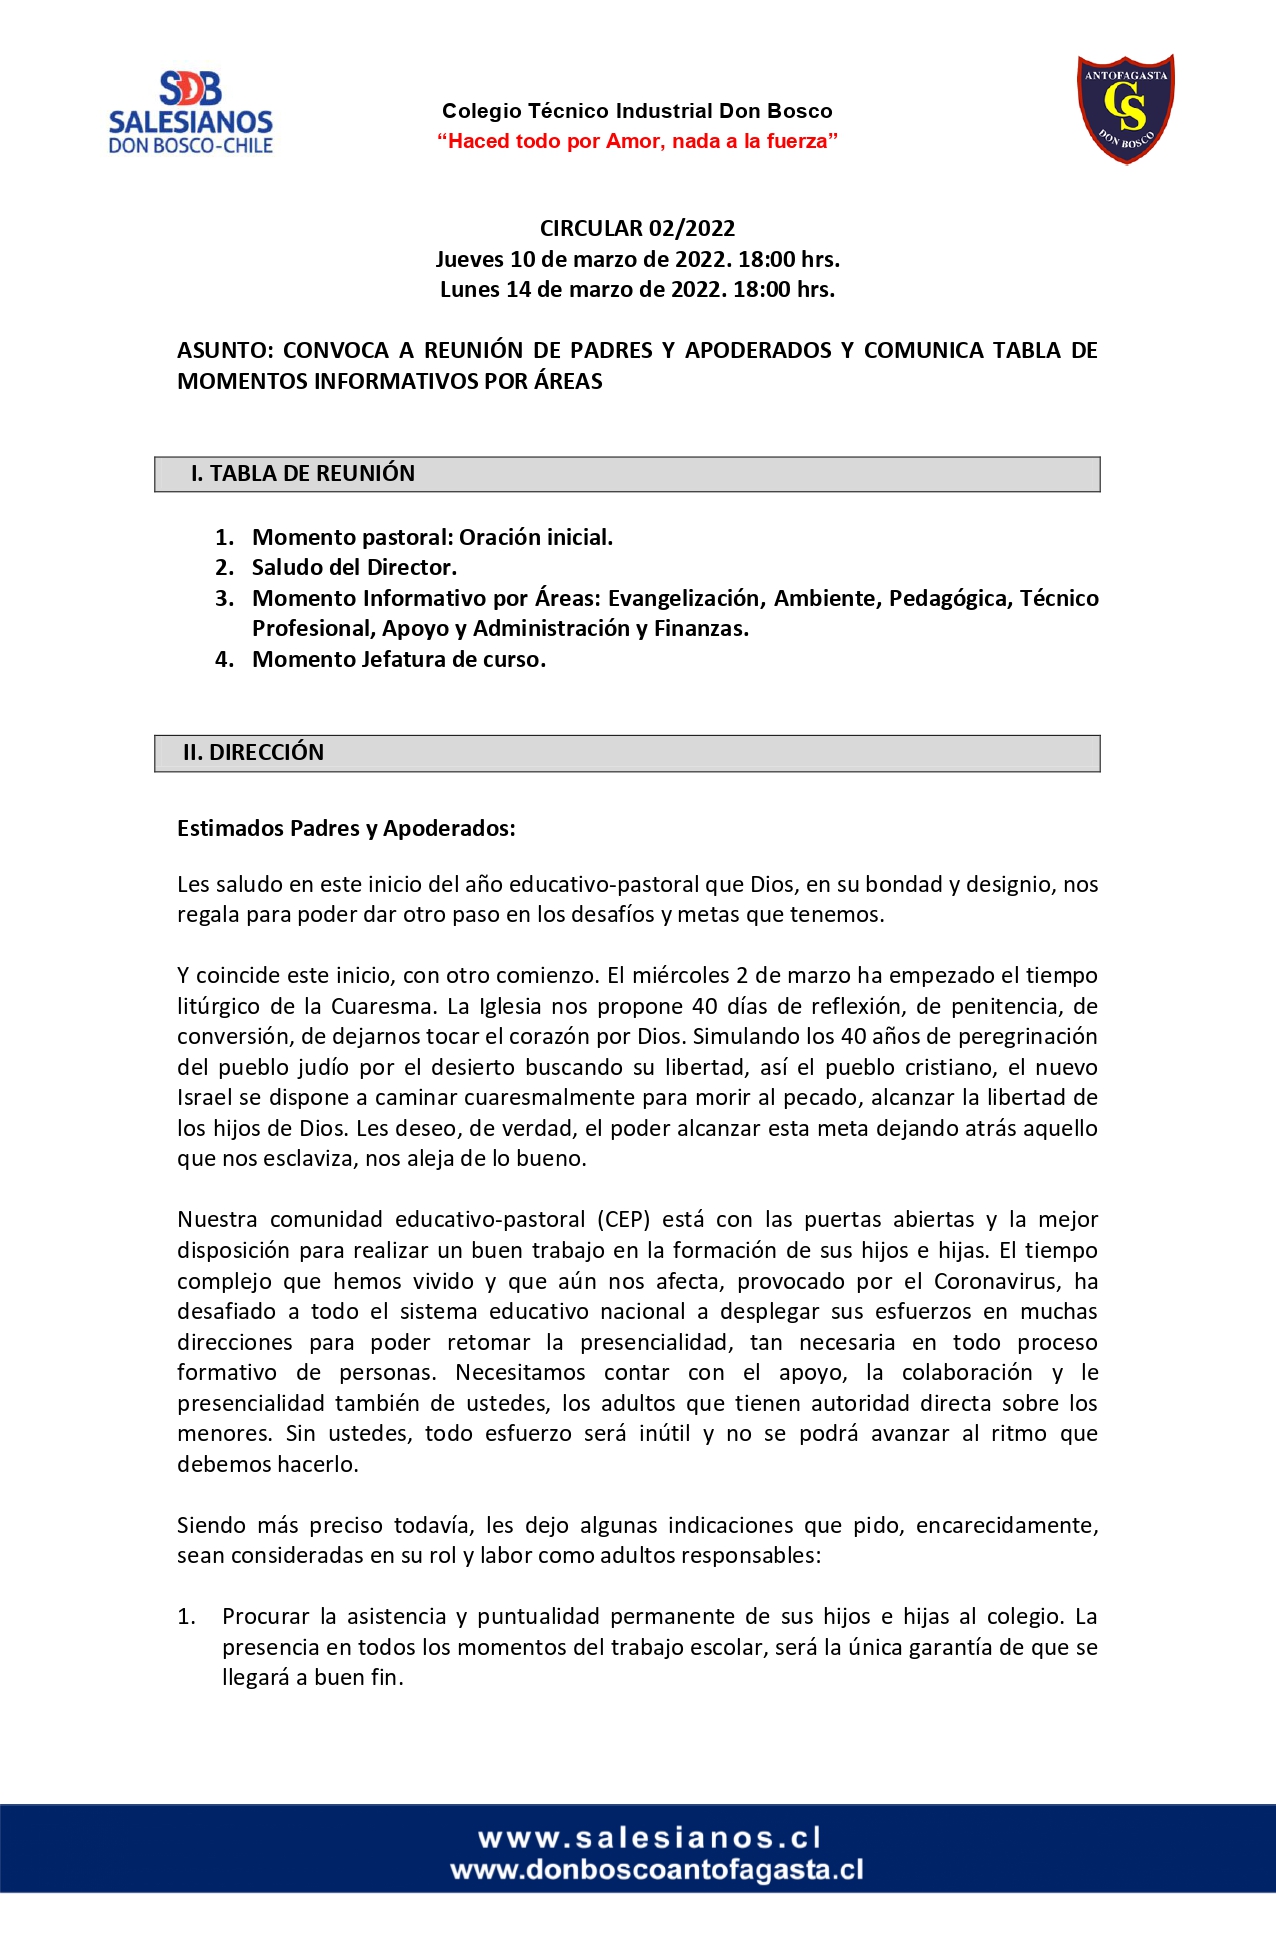 CIRCULAR Nº2 2022 INFORMA REUNIÓN DE PADRES Y APODERADOS 10 Y 14 DE MARZO DE 2022. page 0001